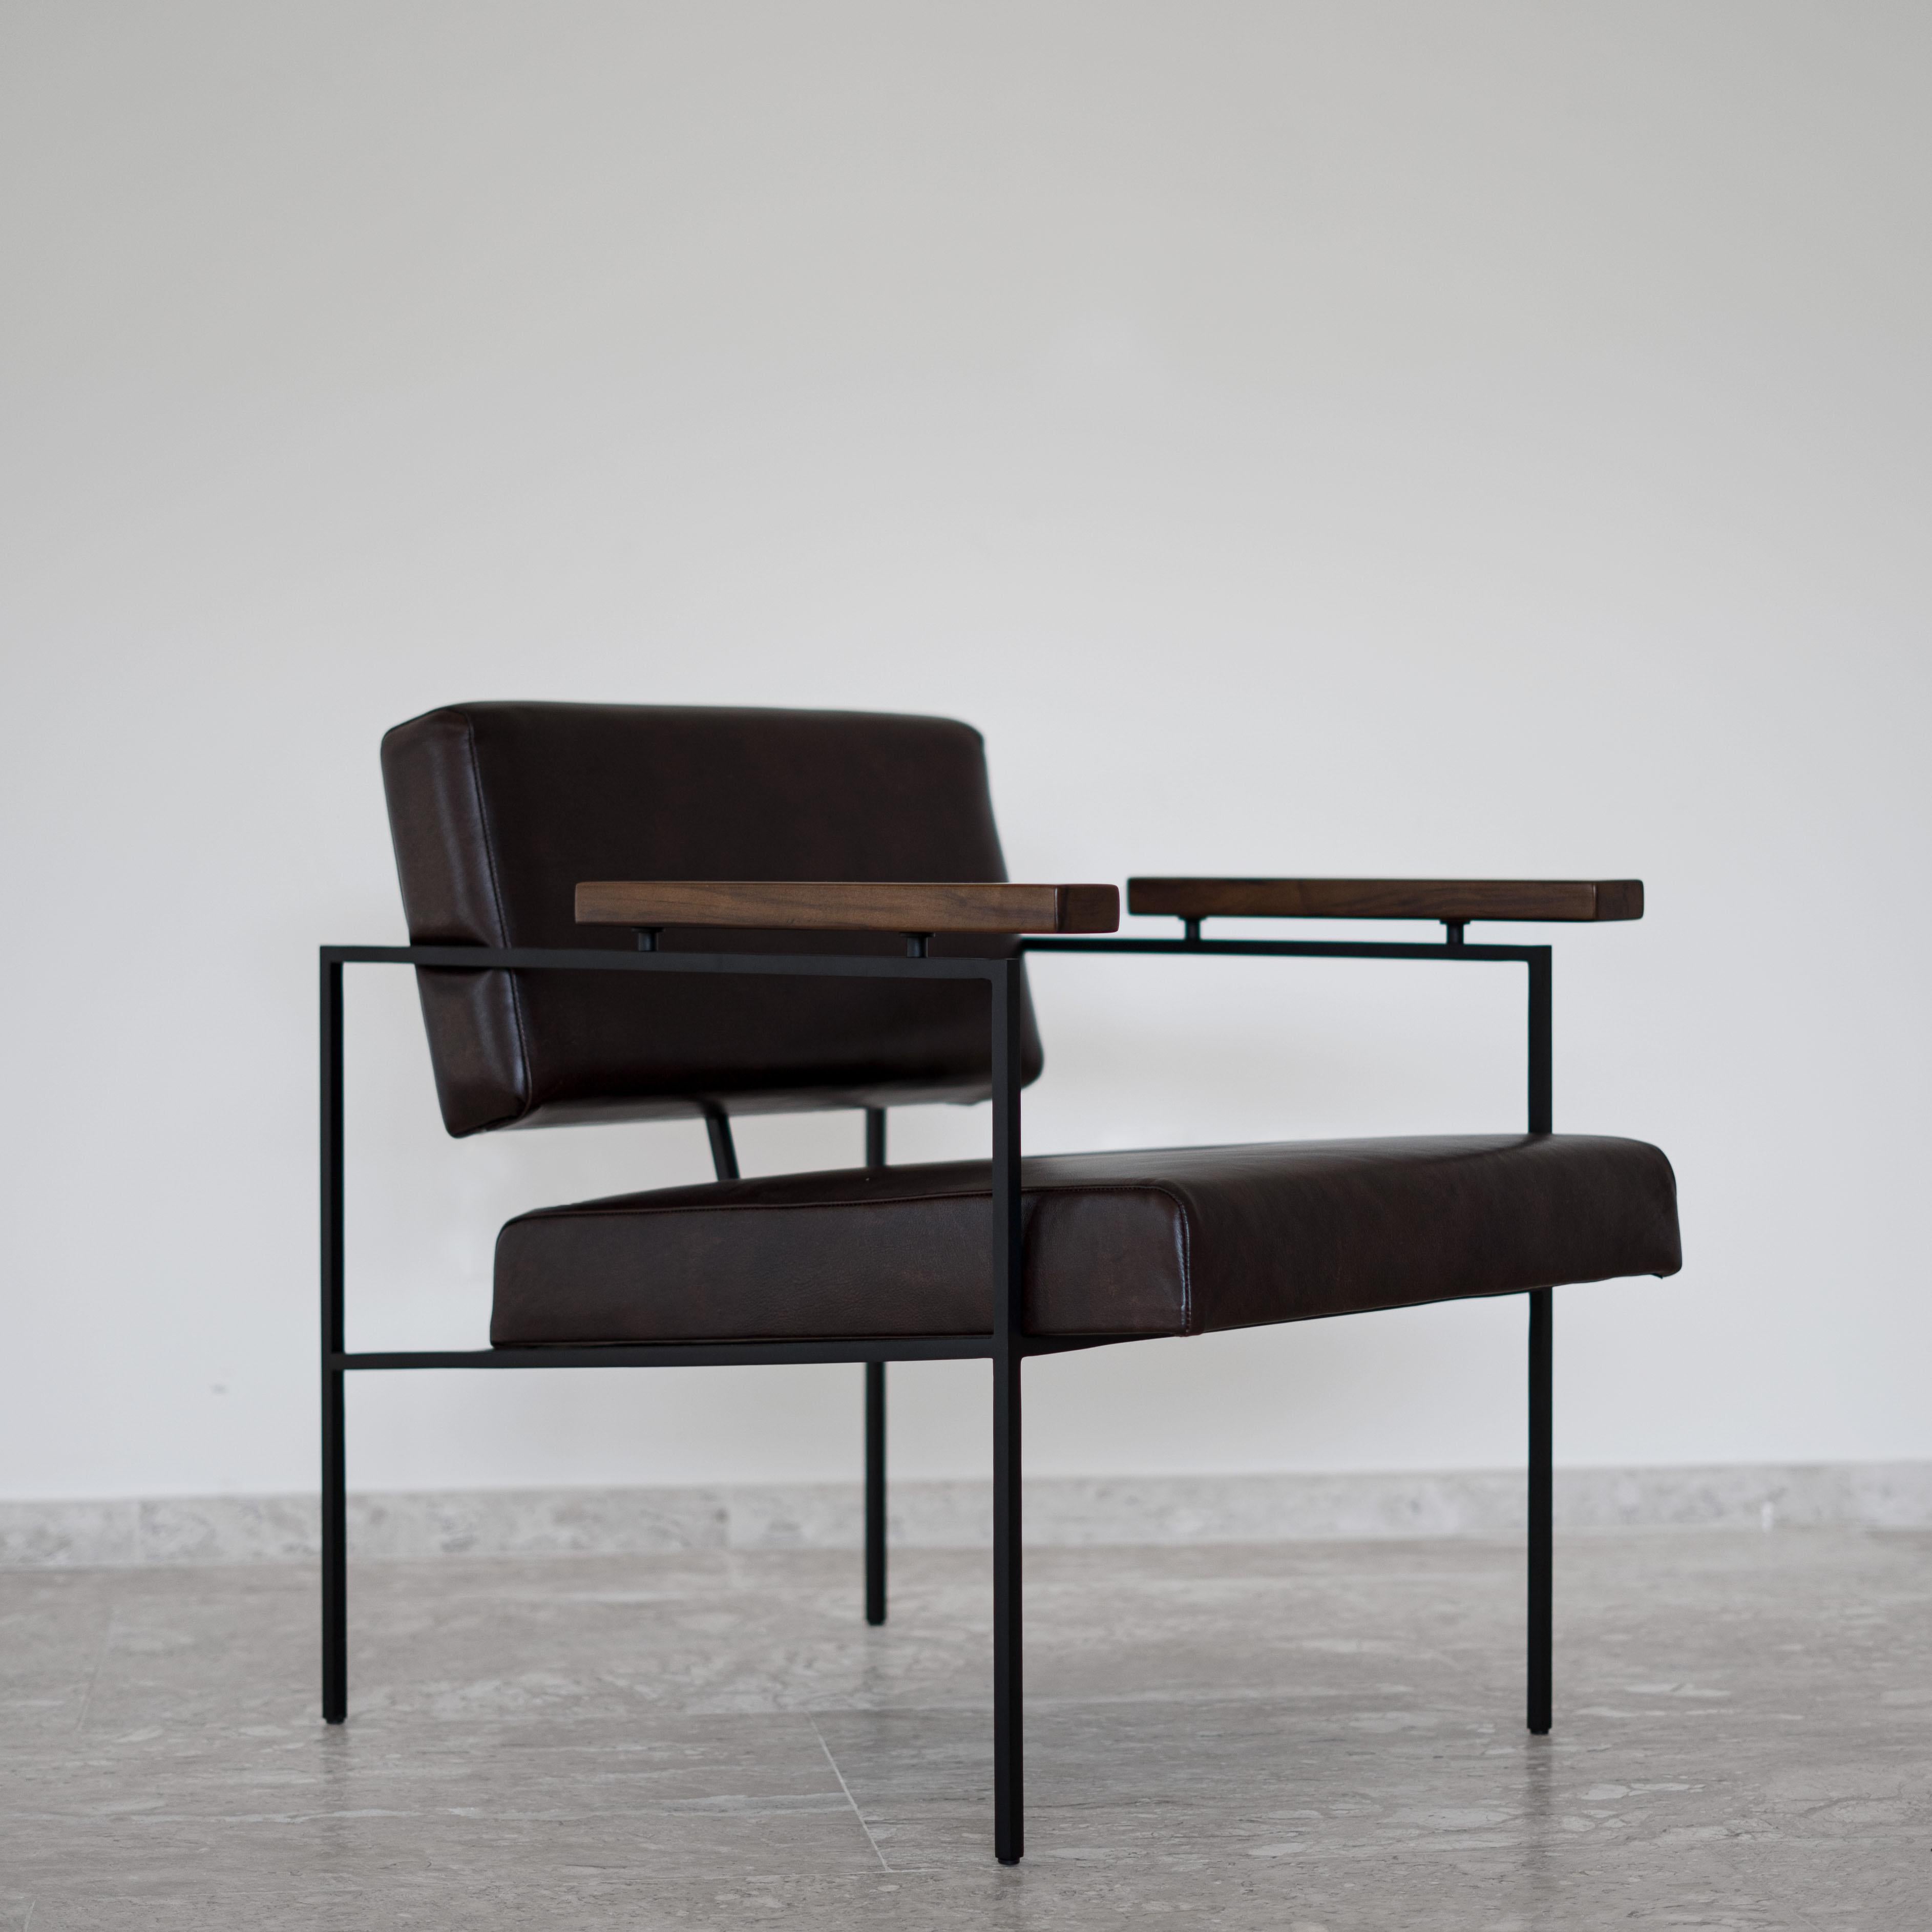 Der preisgekrönte minimalistische Sessel 'Helena' von Samuel Lamas hat eine architektonische und geometrische Grundidee. Das Ziel ist es, einen einfachen Stuhl mit reinen geometrischen Formen zu schaffen. Die quadratischen Querstreben aus massivem